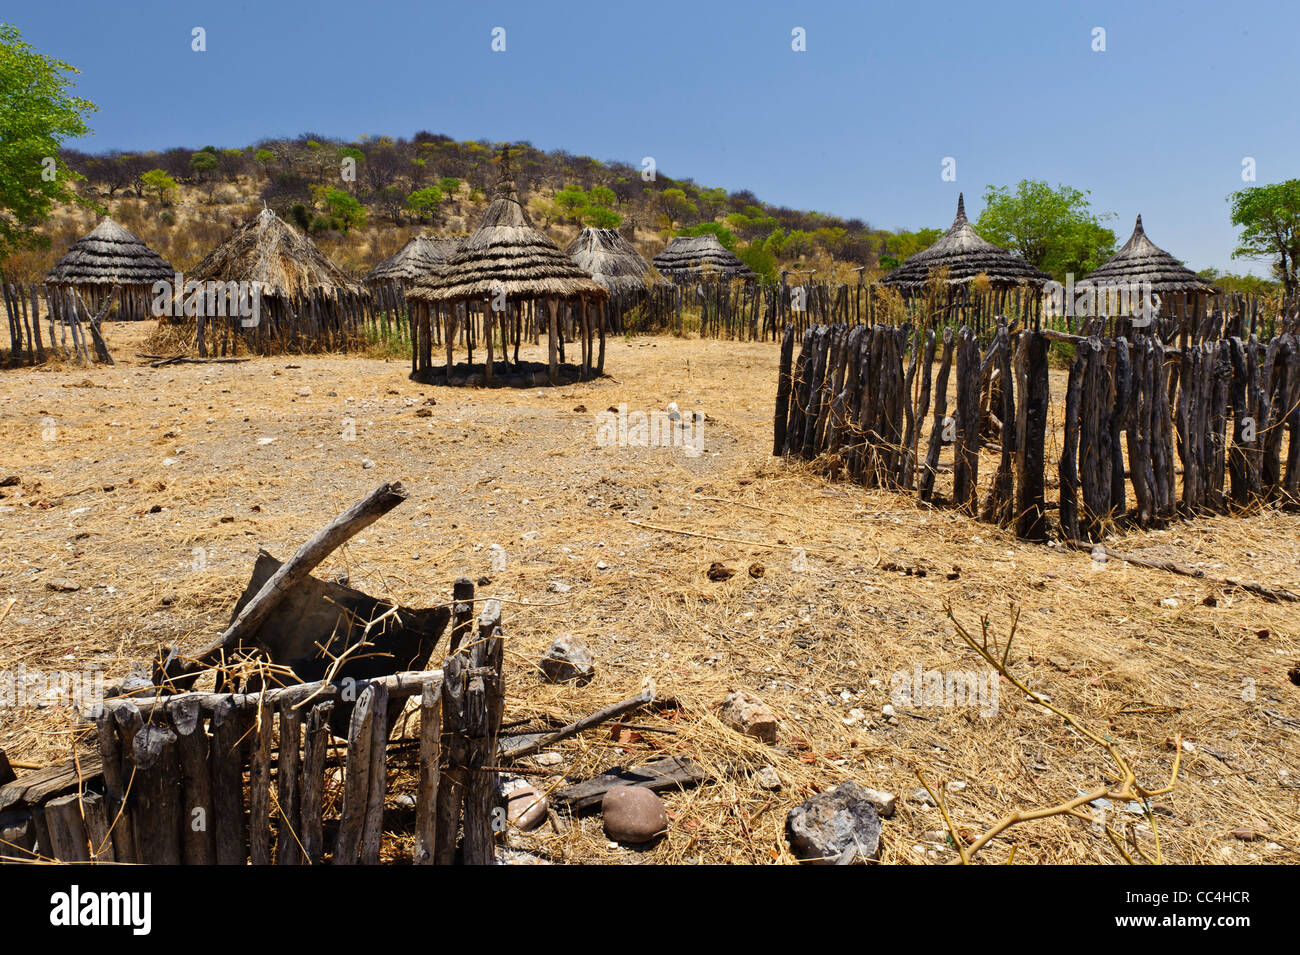 Abbandonato il villaggio Himba durante la stagione secca. Kaokoland, Namibia settentrionale. Foto Stock